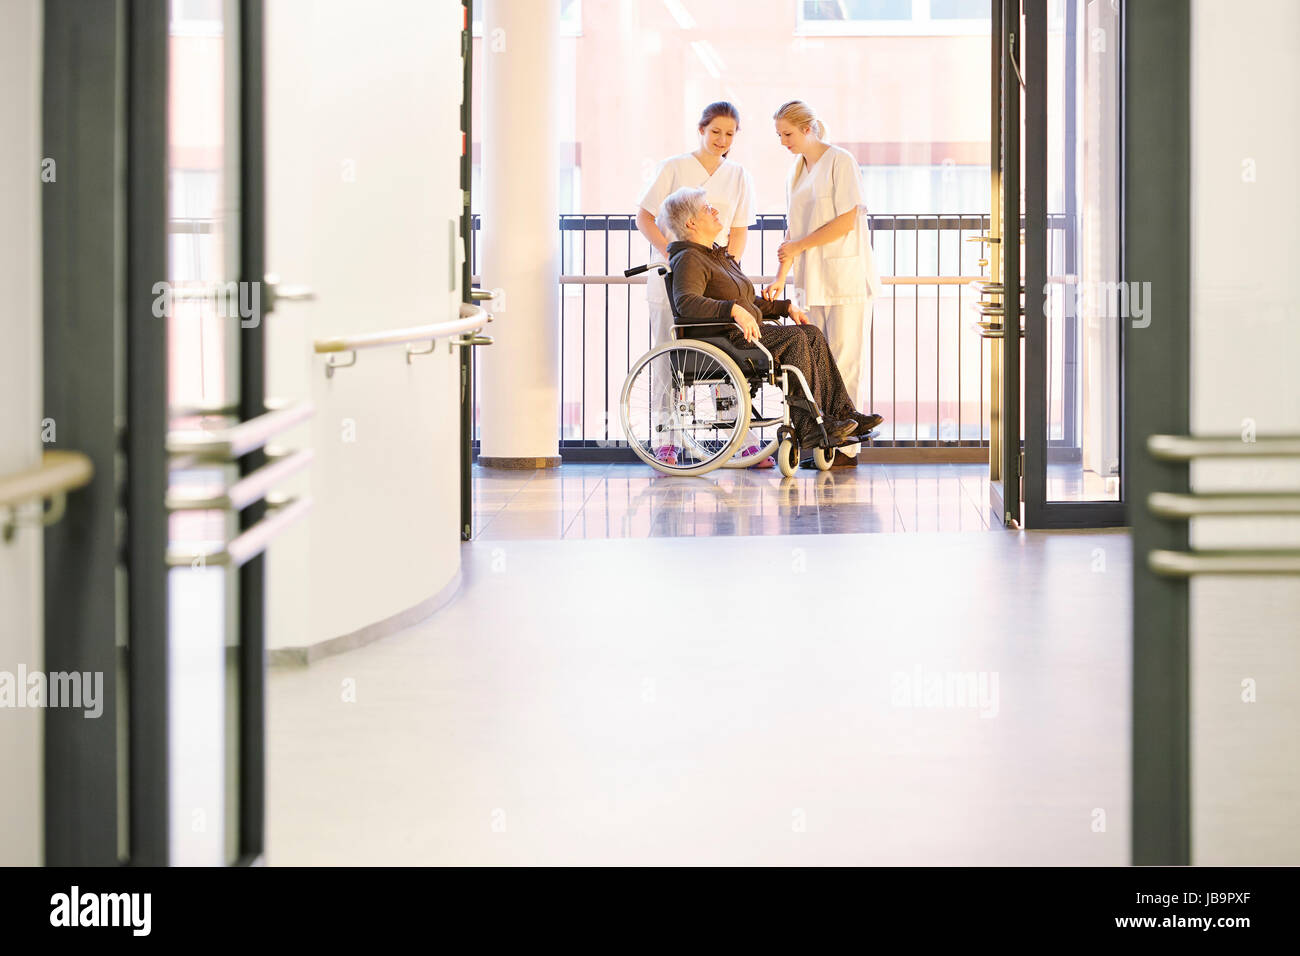 Patientin im Krankenhaus mit Krankenschwestern und Rollstuhl Foto Stock